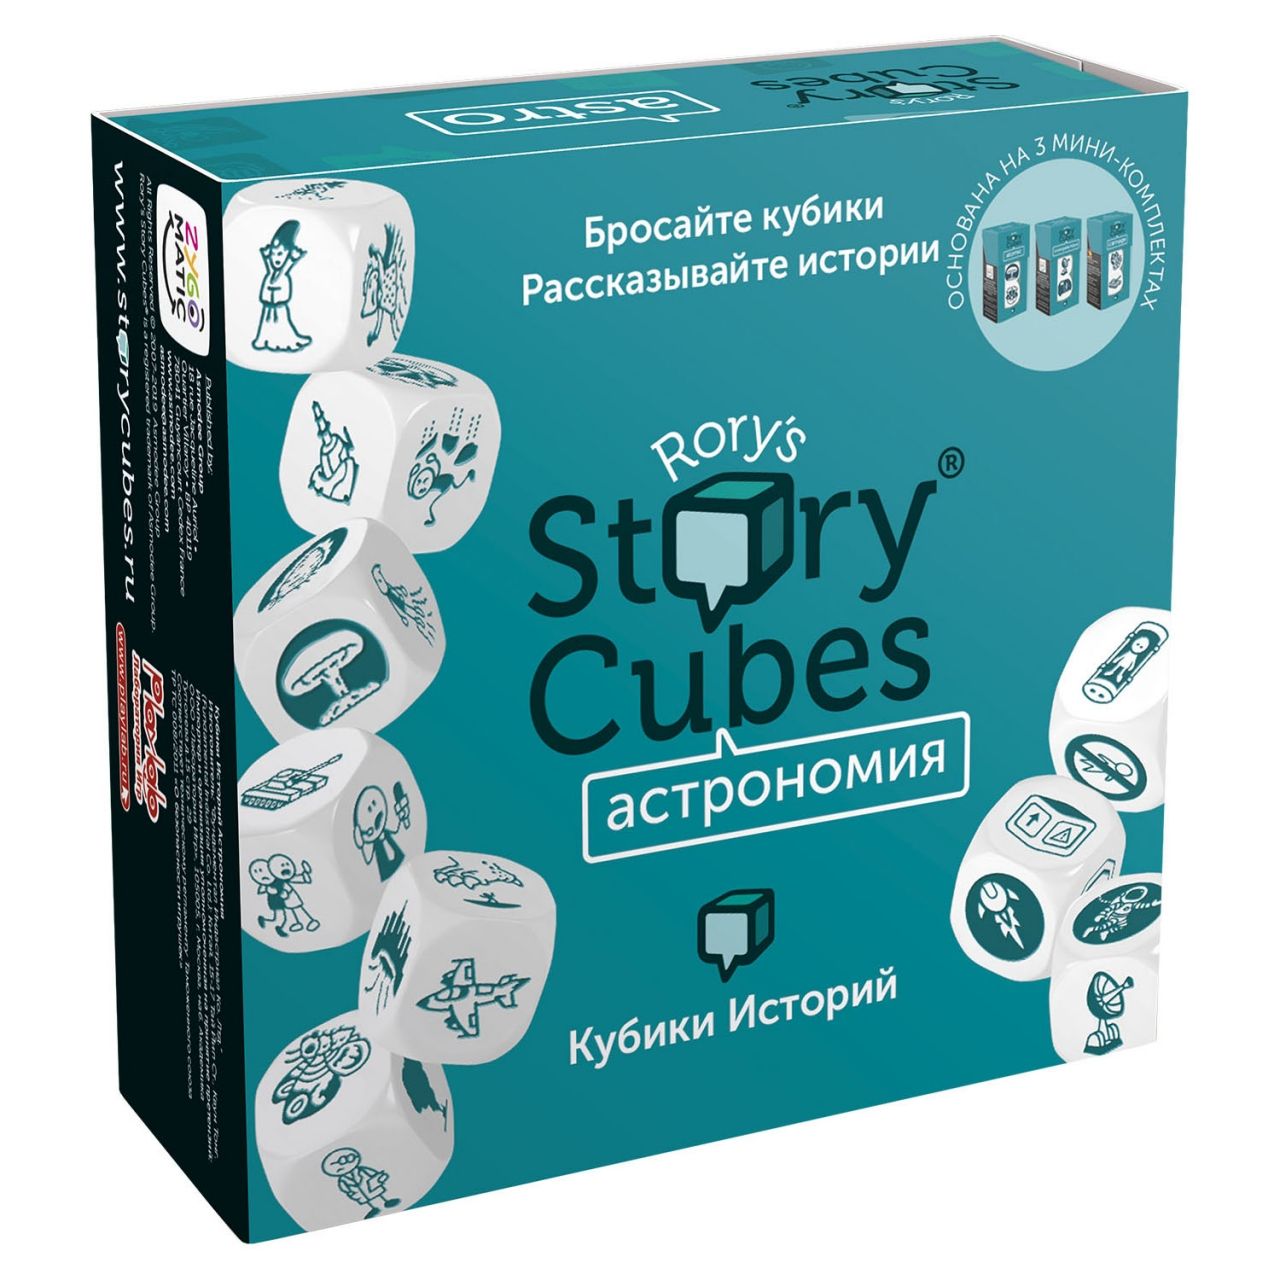 Настольная игра RORYS STORY CUBES RSC31 кубики историй Астрономия настольная игра кубики историй